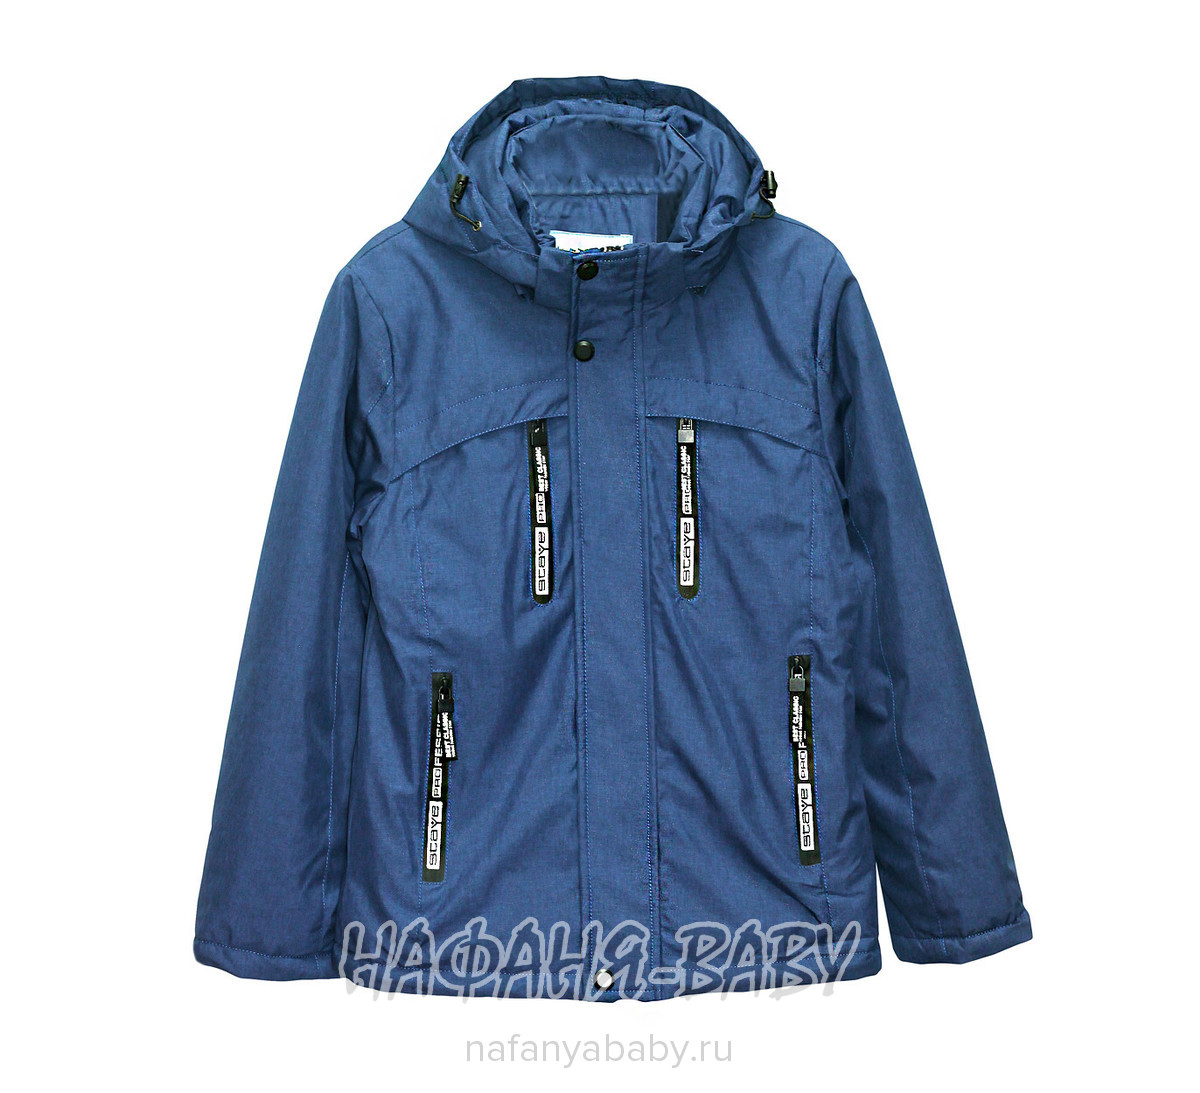 Подростковая демисезонная куртка WEISHIDO арт: 1881, 10-15 лет, цвет серо-голубой, оптом Китай (Пекин)